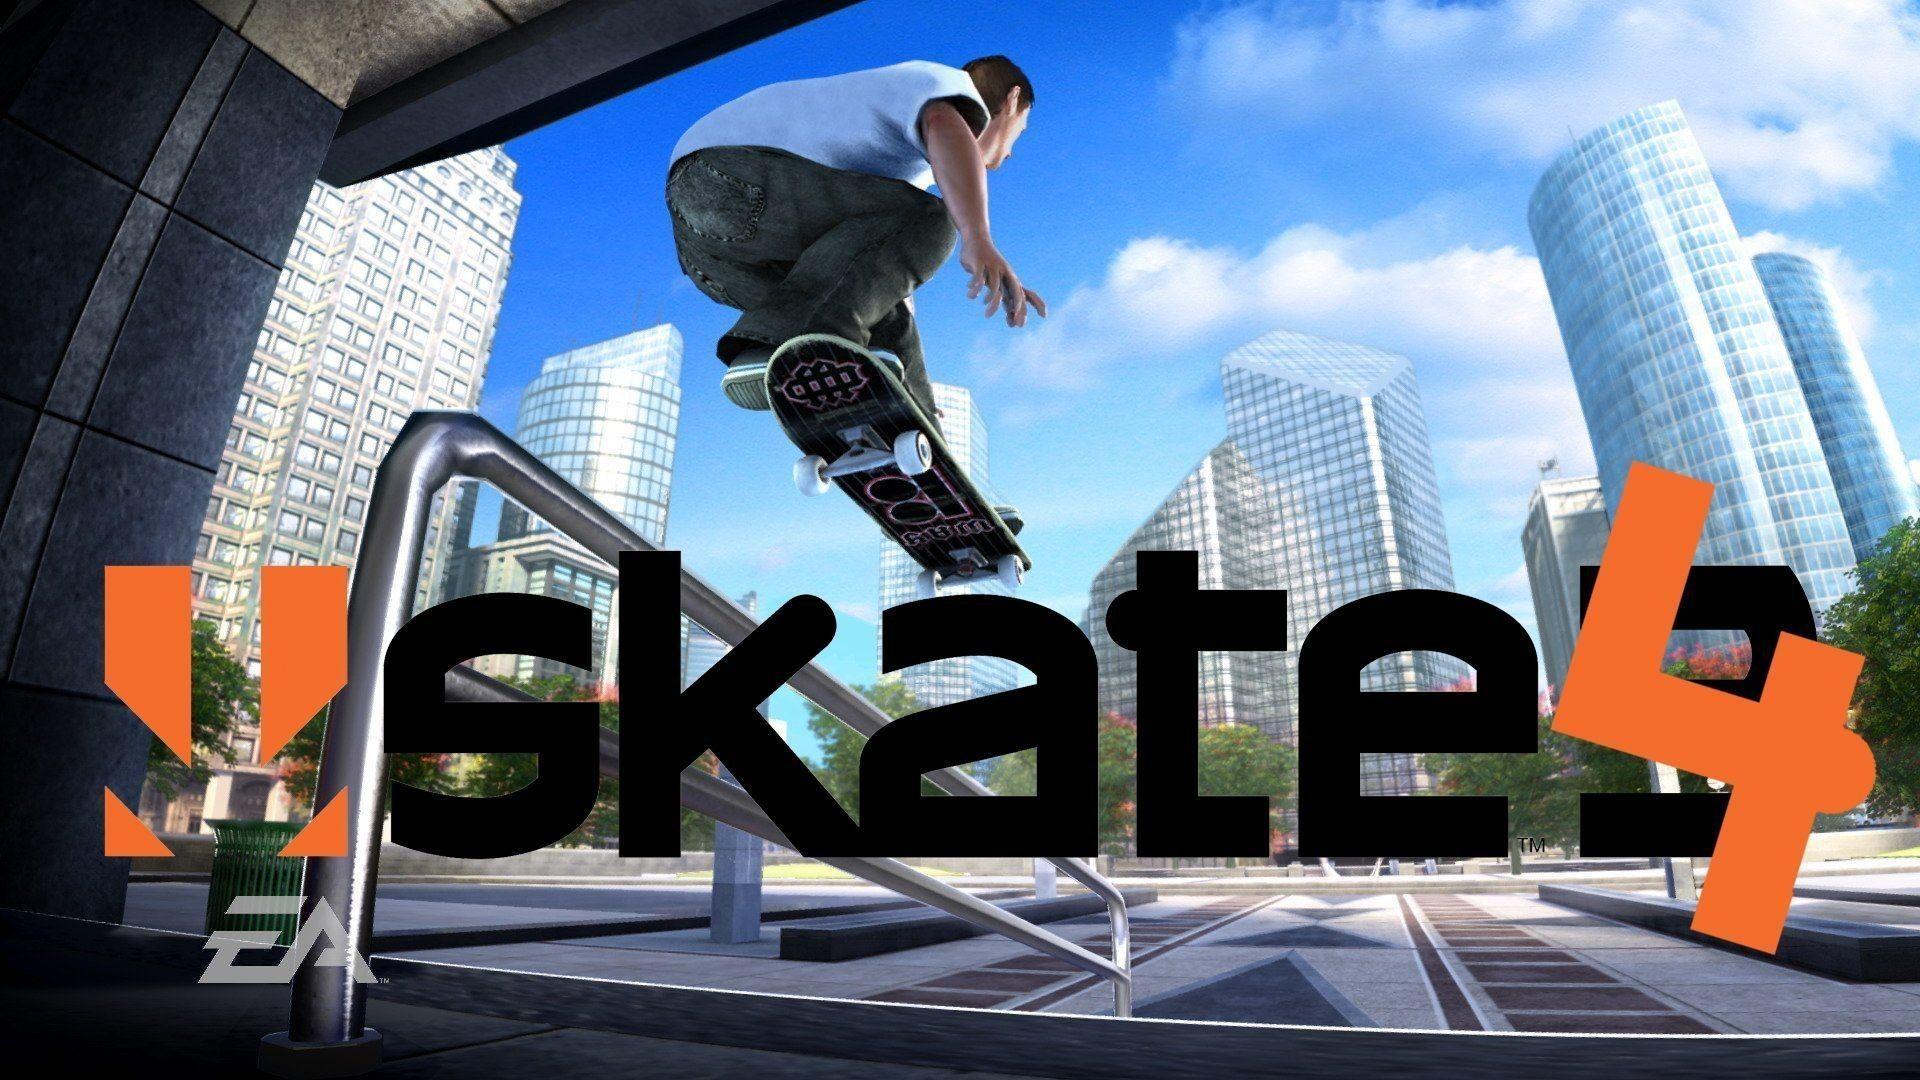 skate 3 pc free download full version